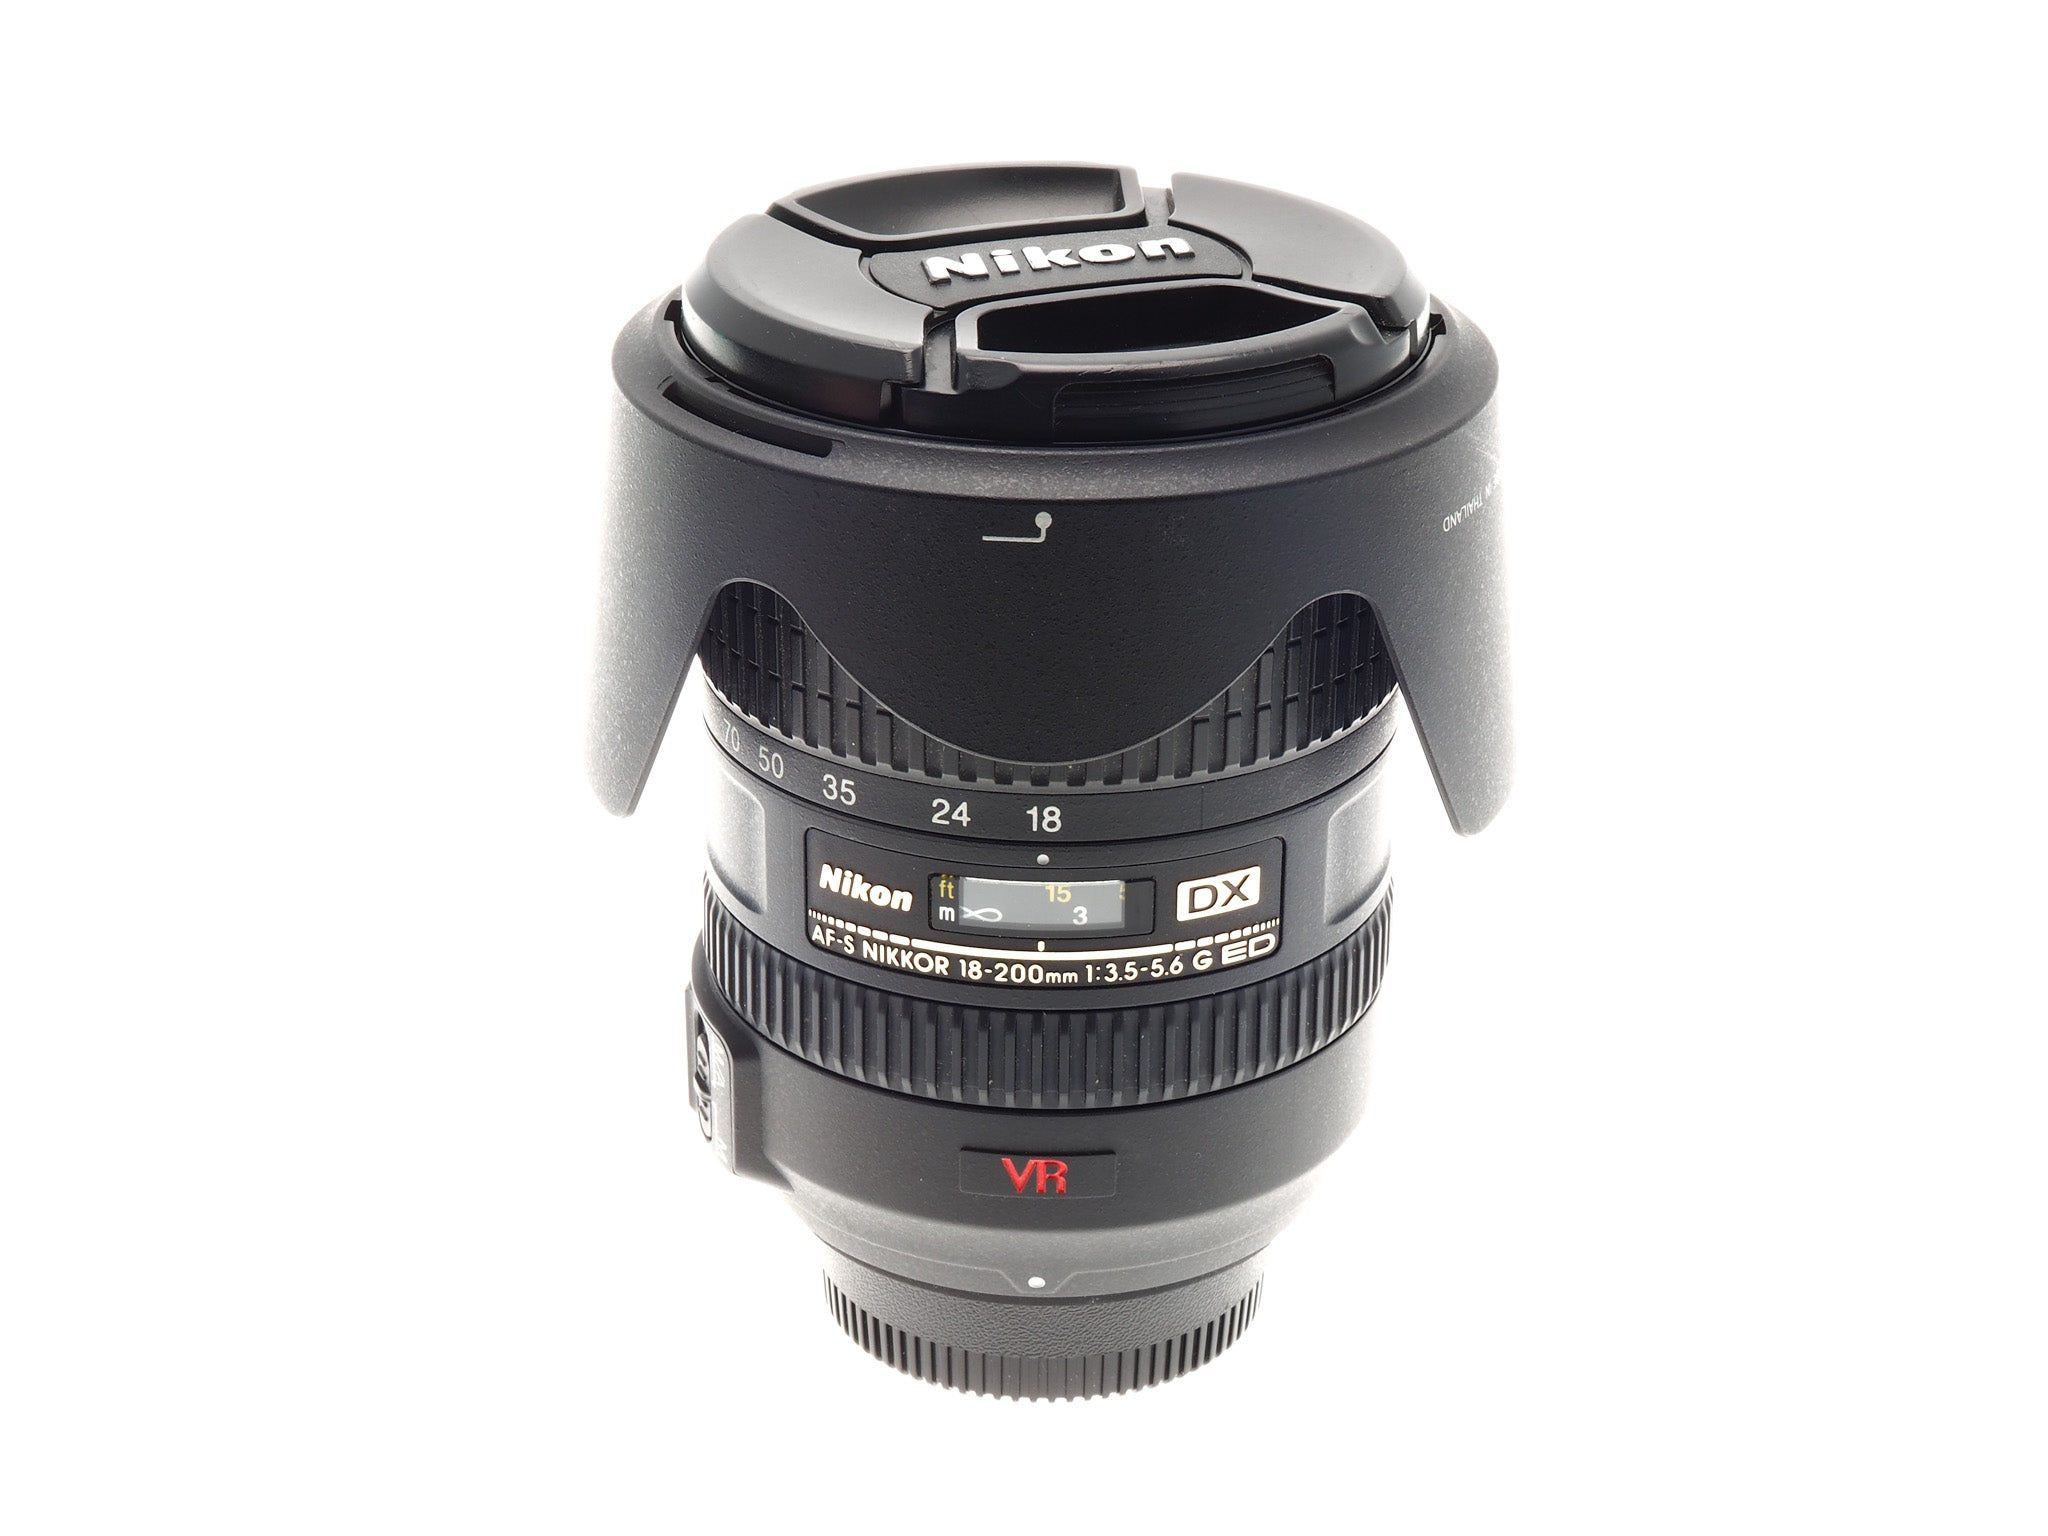 Nikon 18-200mm f3.5-5.6 AF-S Nikkor G ED VR - Lens